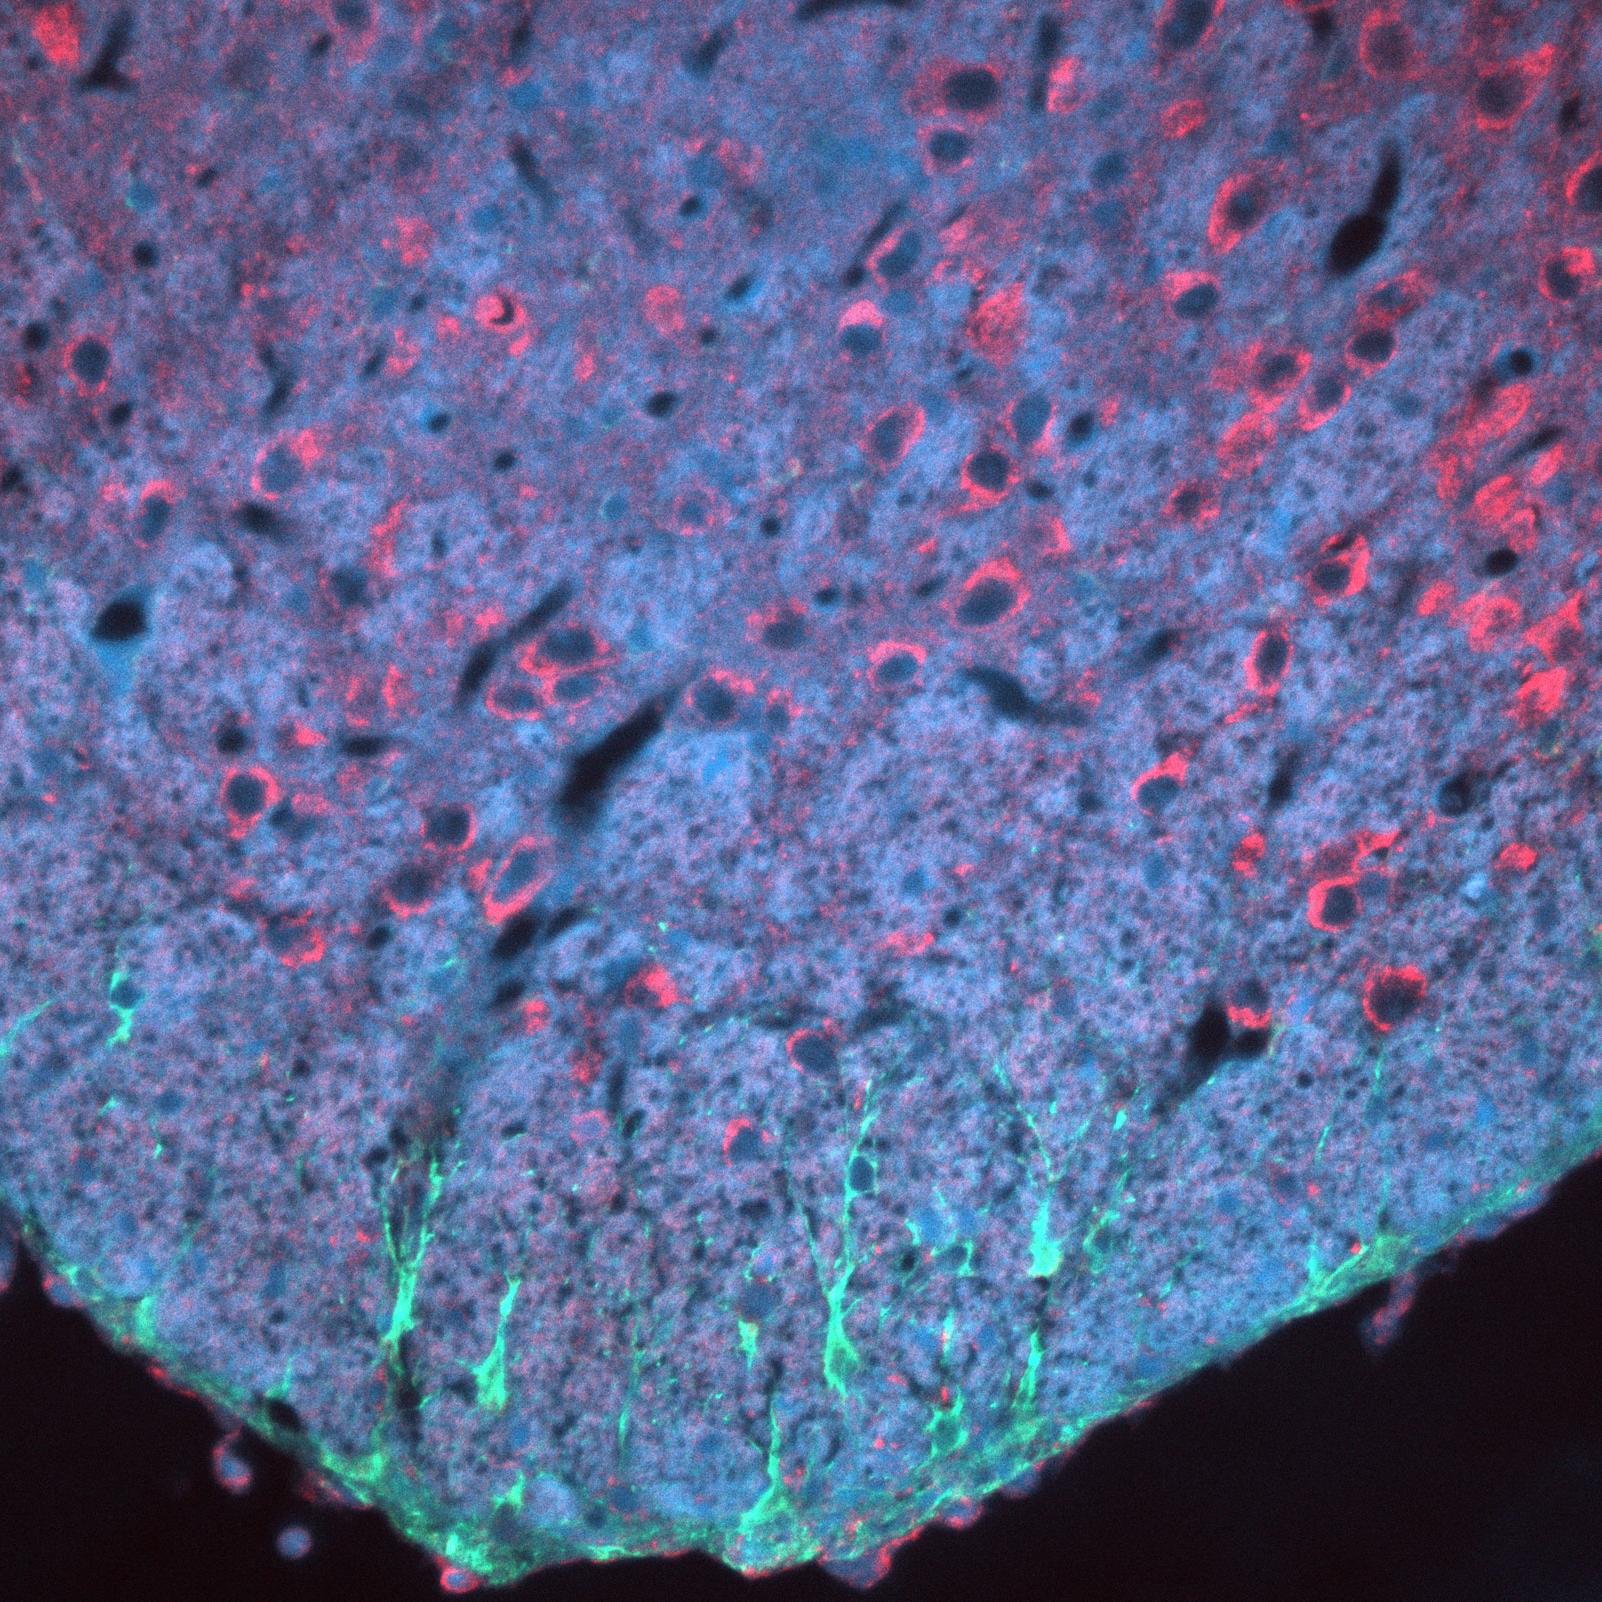 抗体染色したマウス脳切片。細胞核（青）、星状膠細胞（緑）、サイトケラチン（赤）、ZEISS Axio Imagerで取得、対物レンズ：EC Plan-NEOFLUAR 20x / 0.50